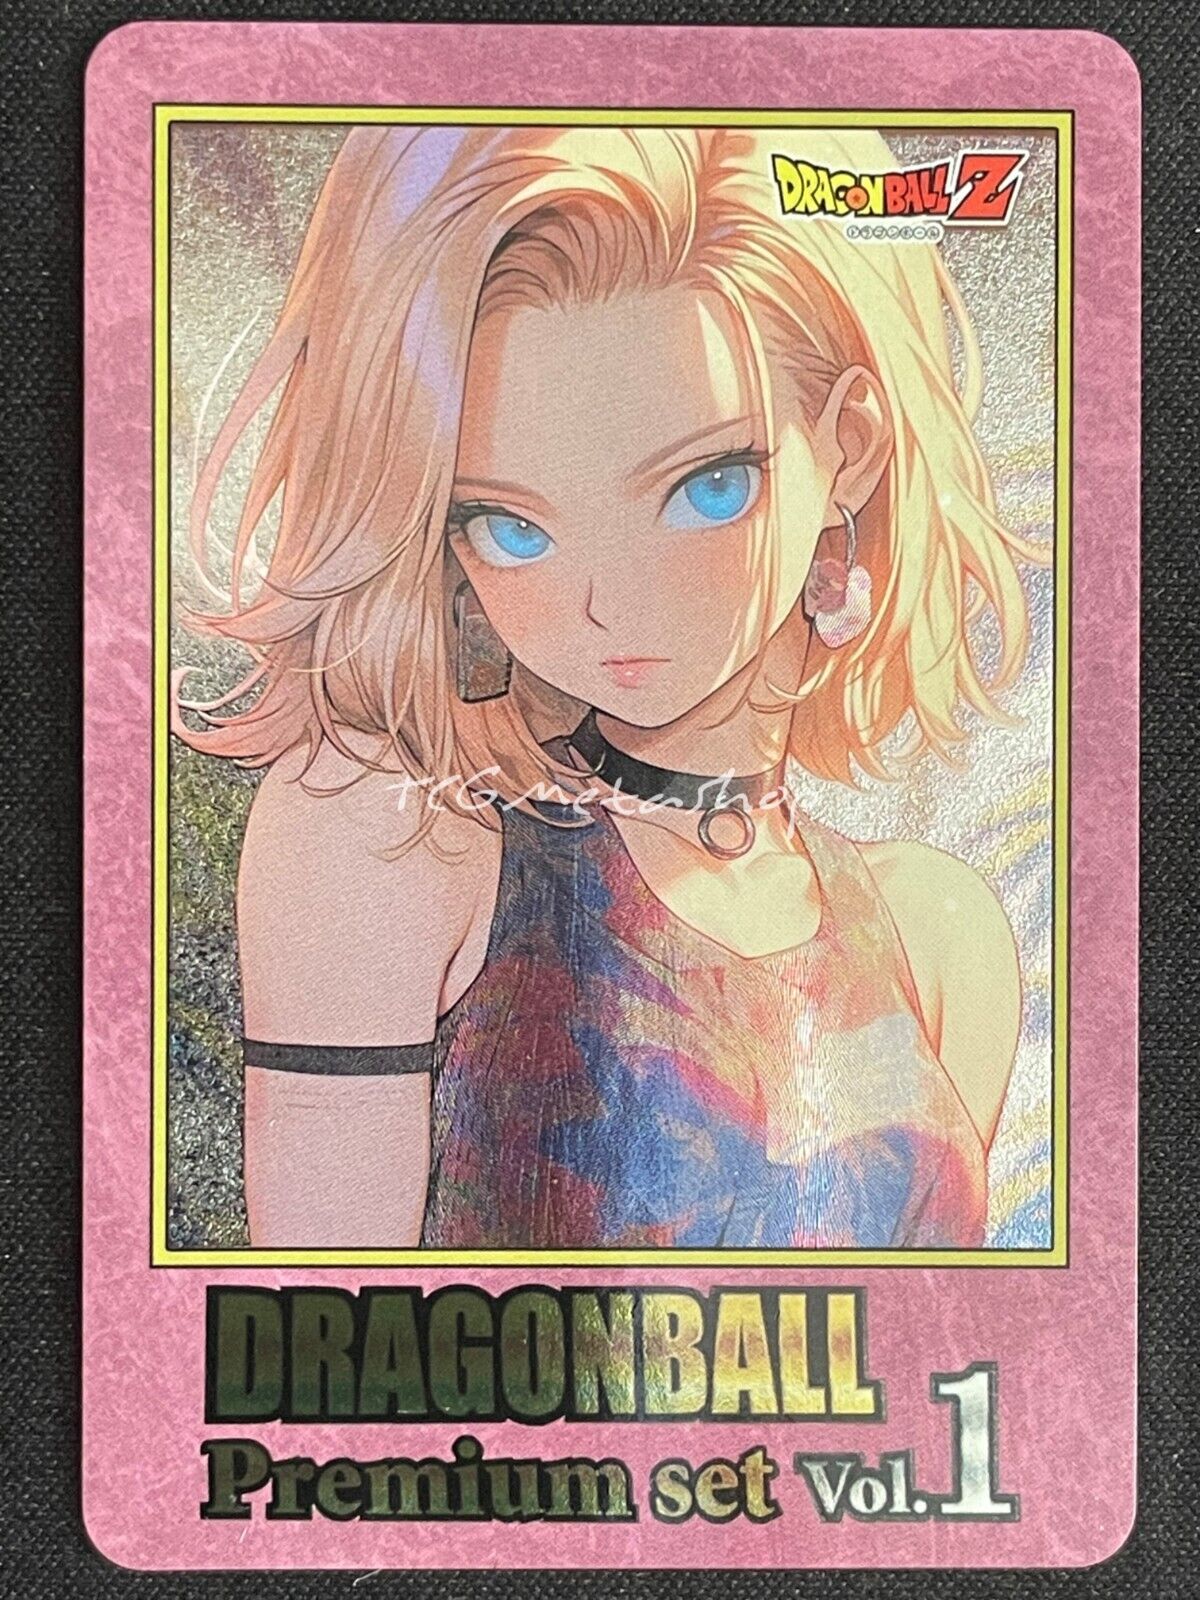 🔥 Android 18 Dragon Ball Goddess Story Anime Card ACG # 2825 🔥